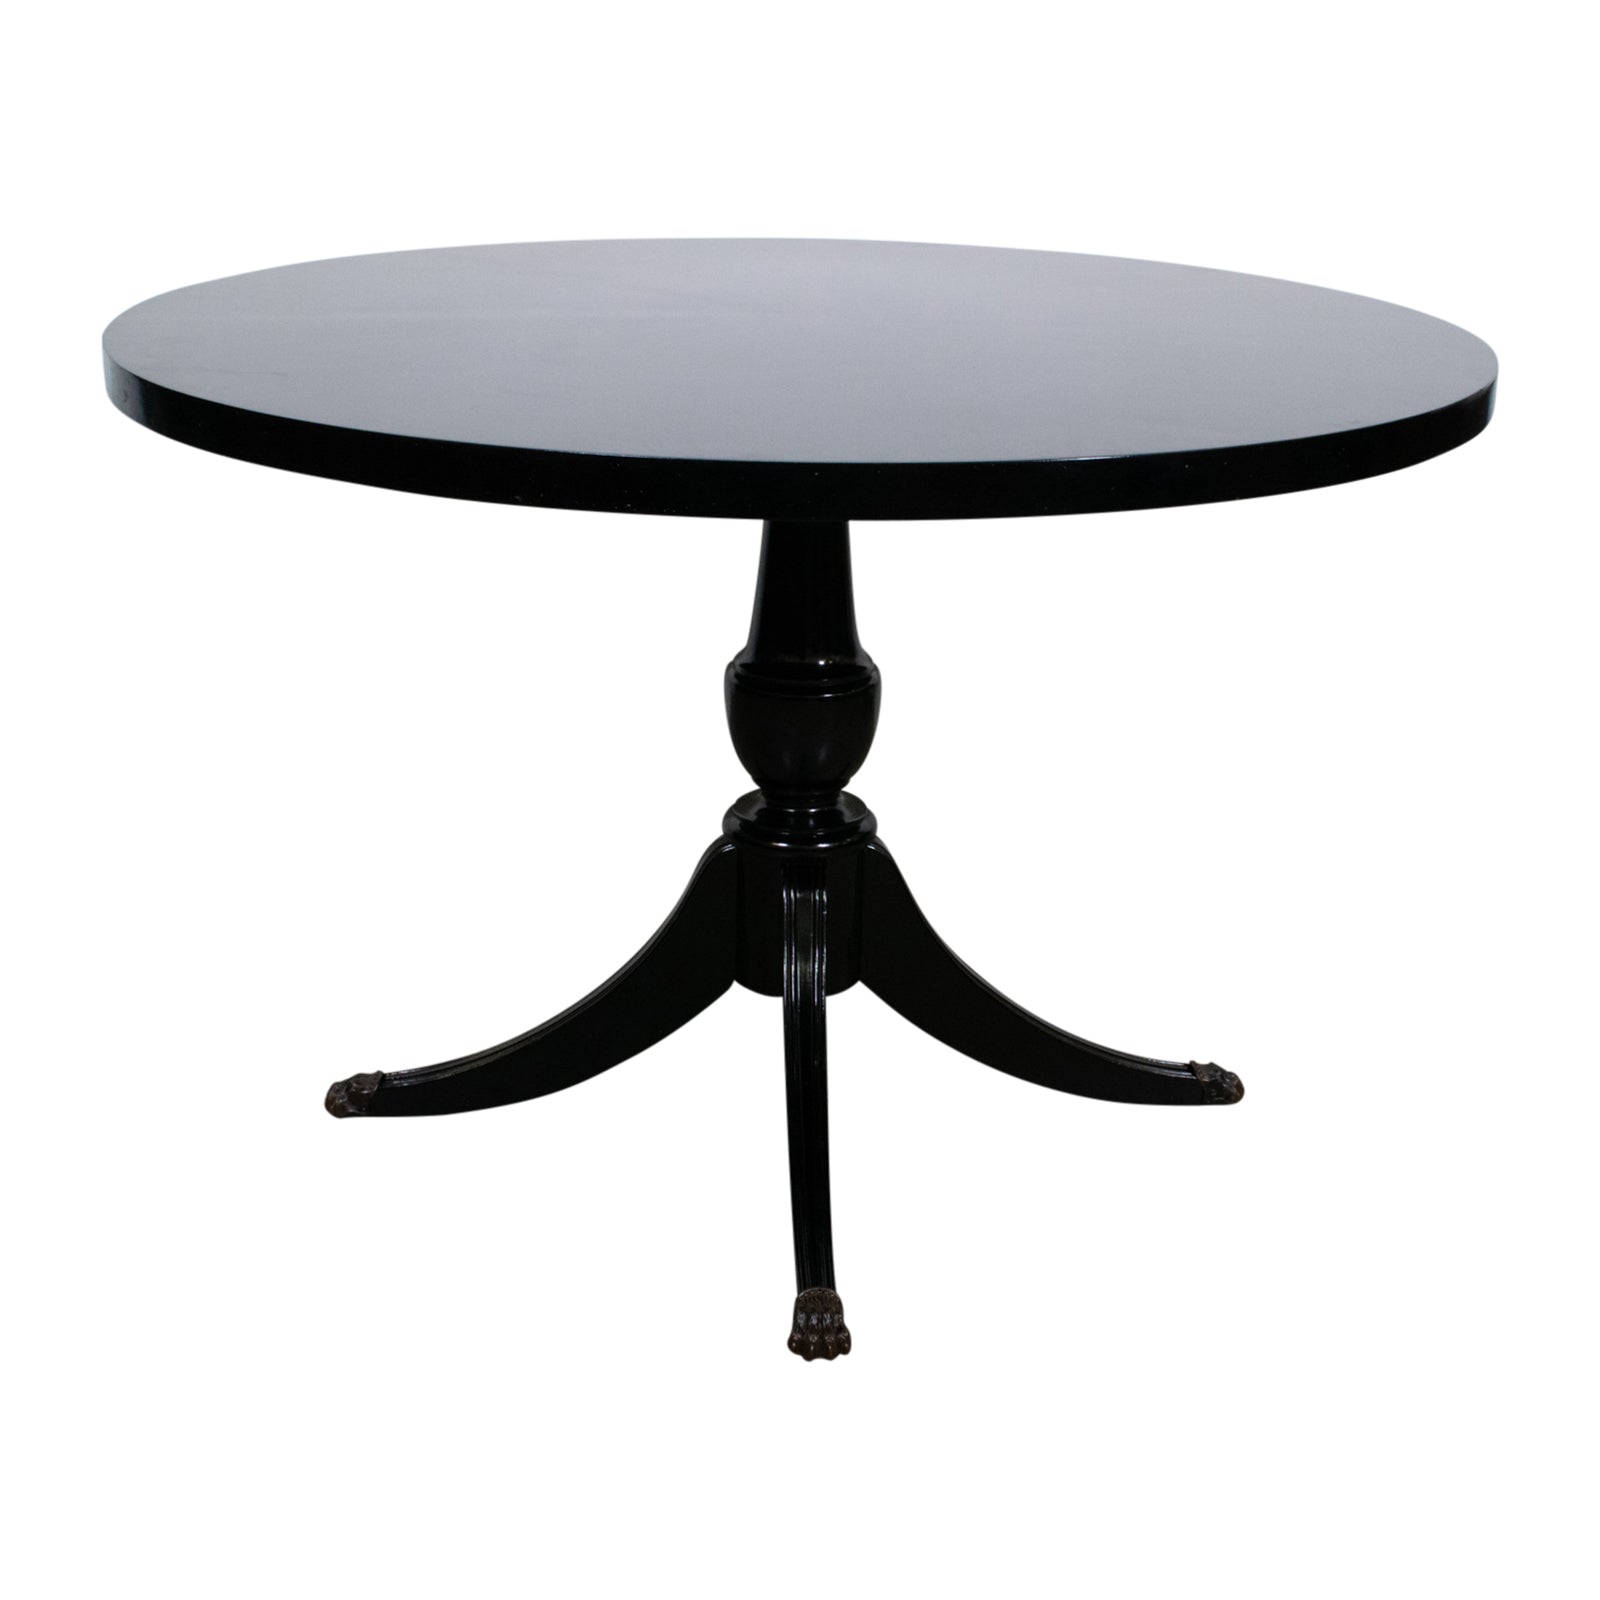 A Regency Style Ebonised Mahogany Centre Table